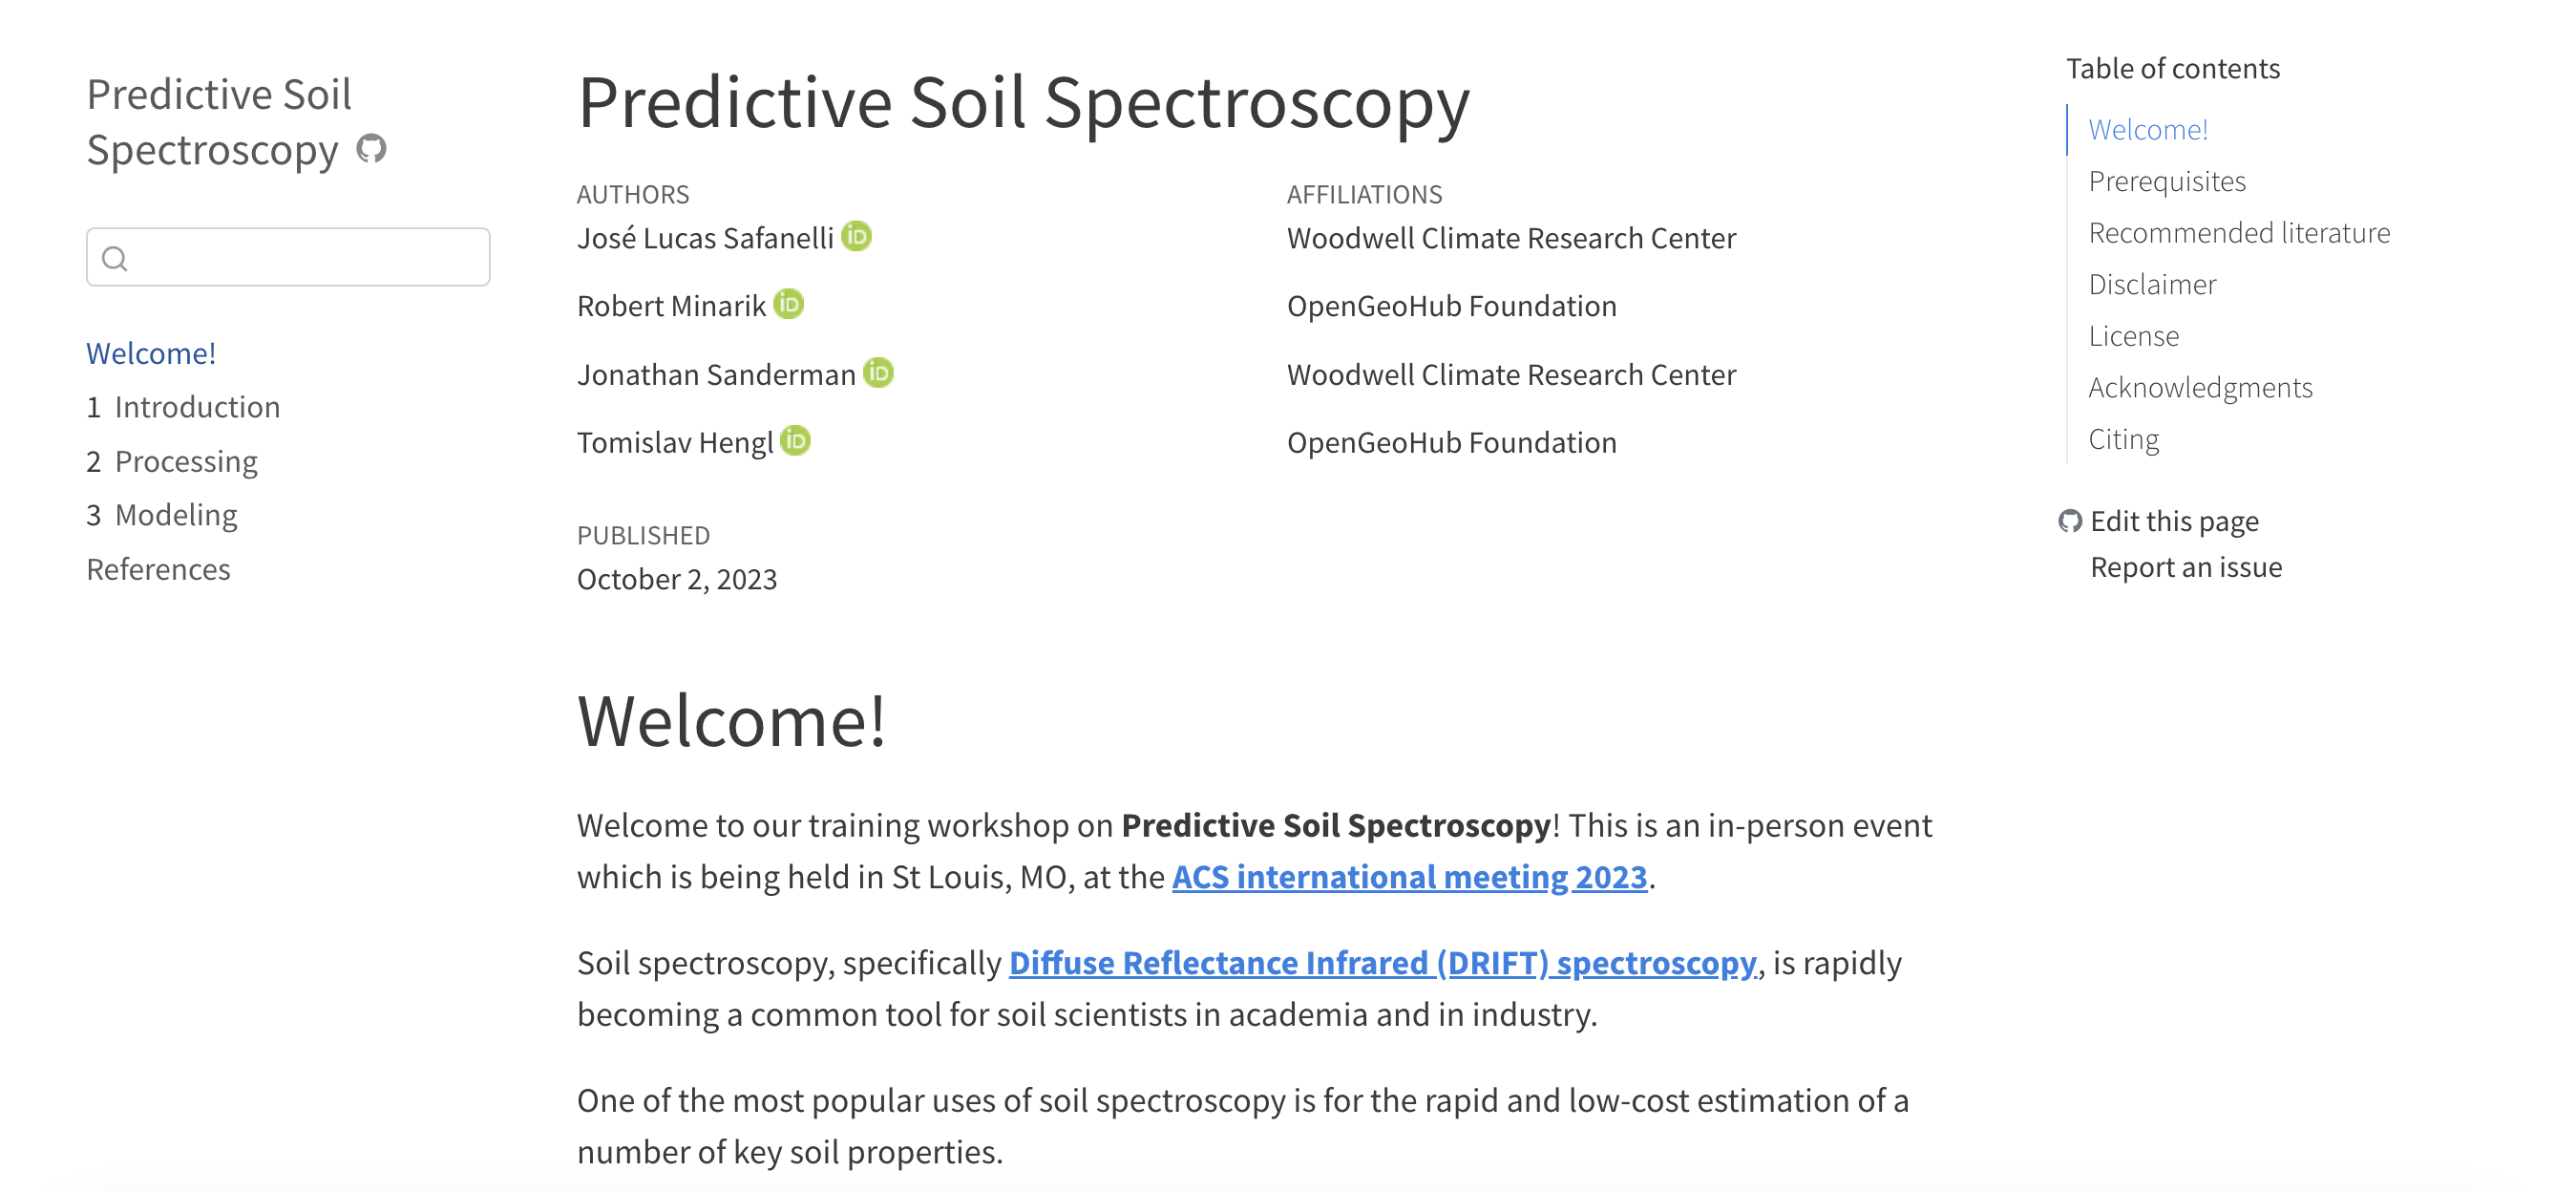 https://soilspectroscopy.github.io/soilspec-workshop/